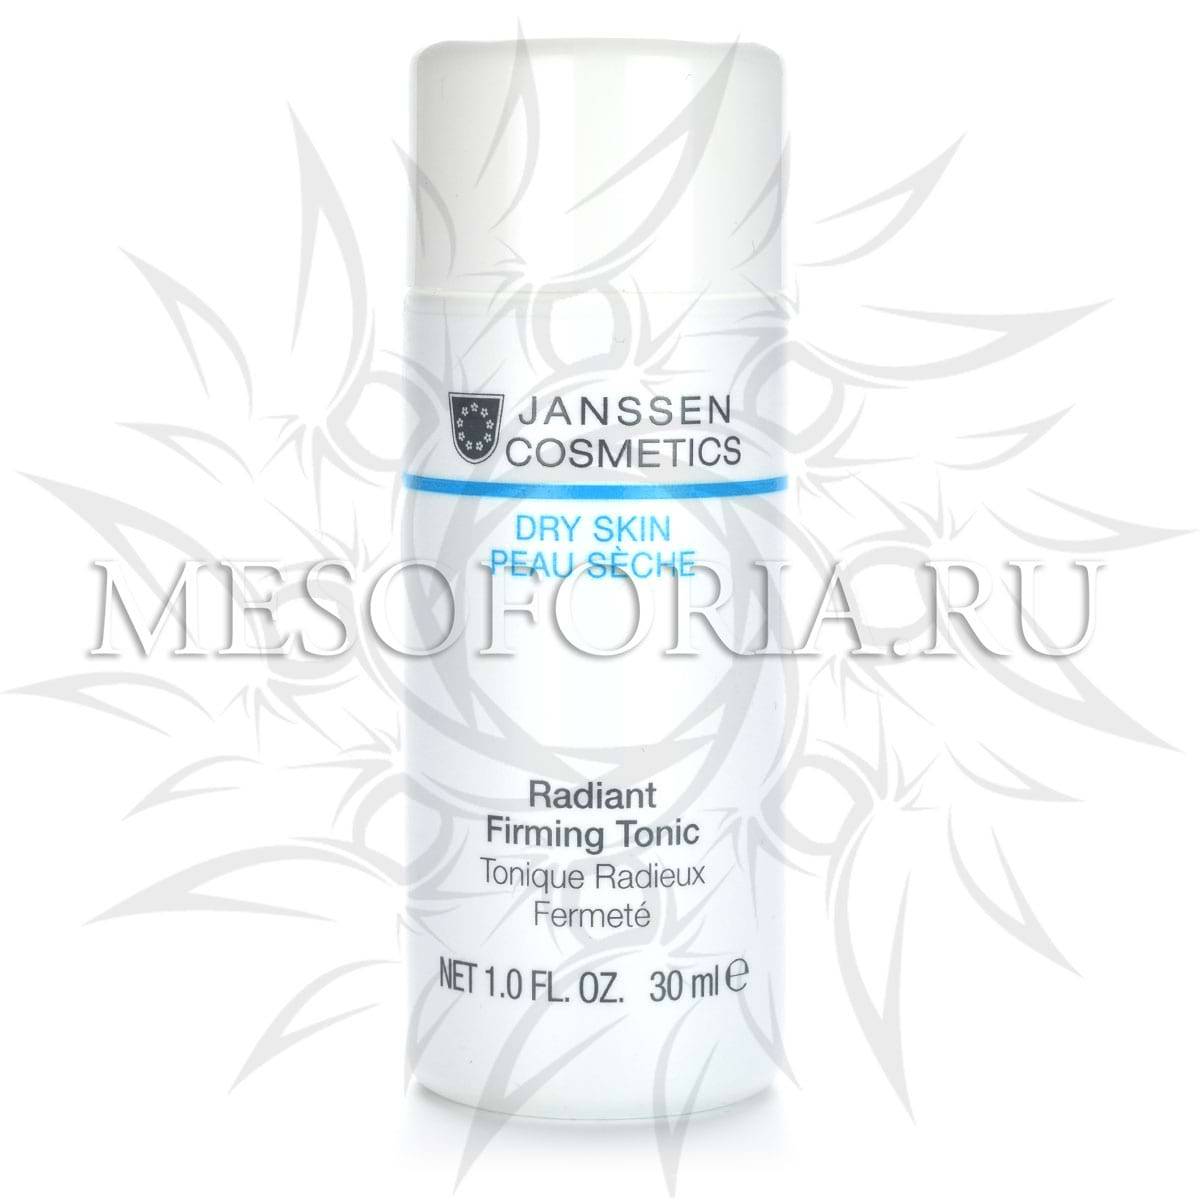 Структурирующий тоник / Radiant Firming Tonic, Dry Skin, Janssen Cosmetics (Янсен косметика), 30 мл